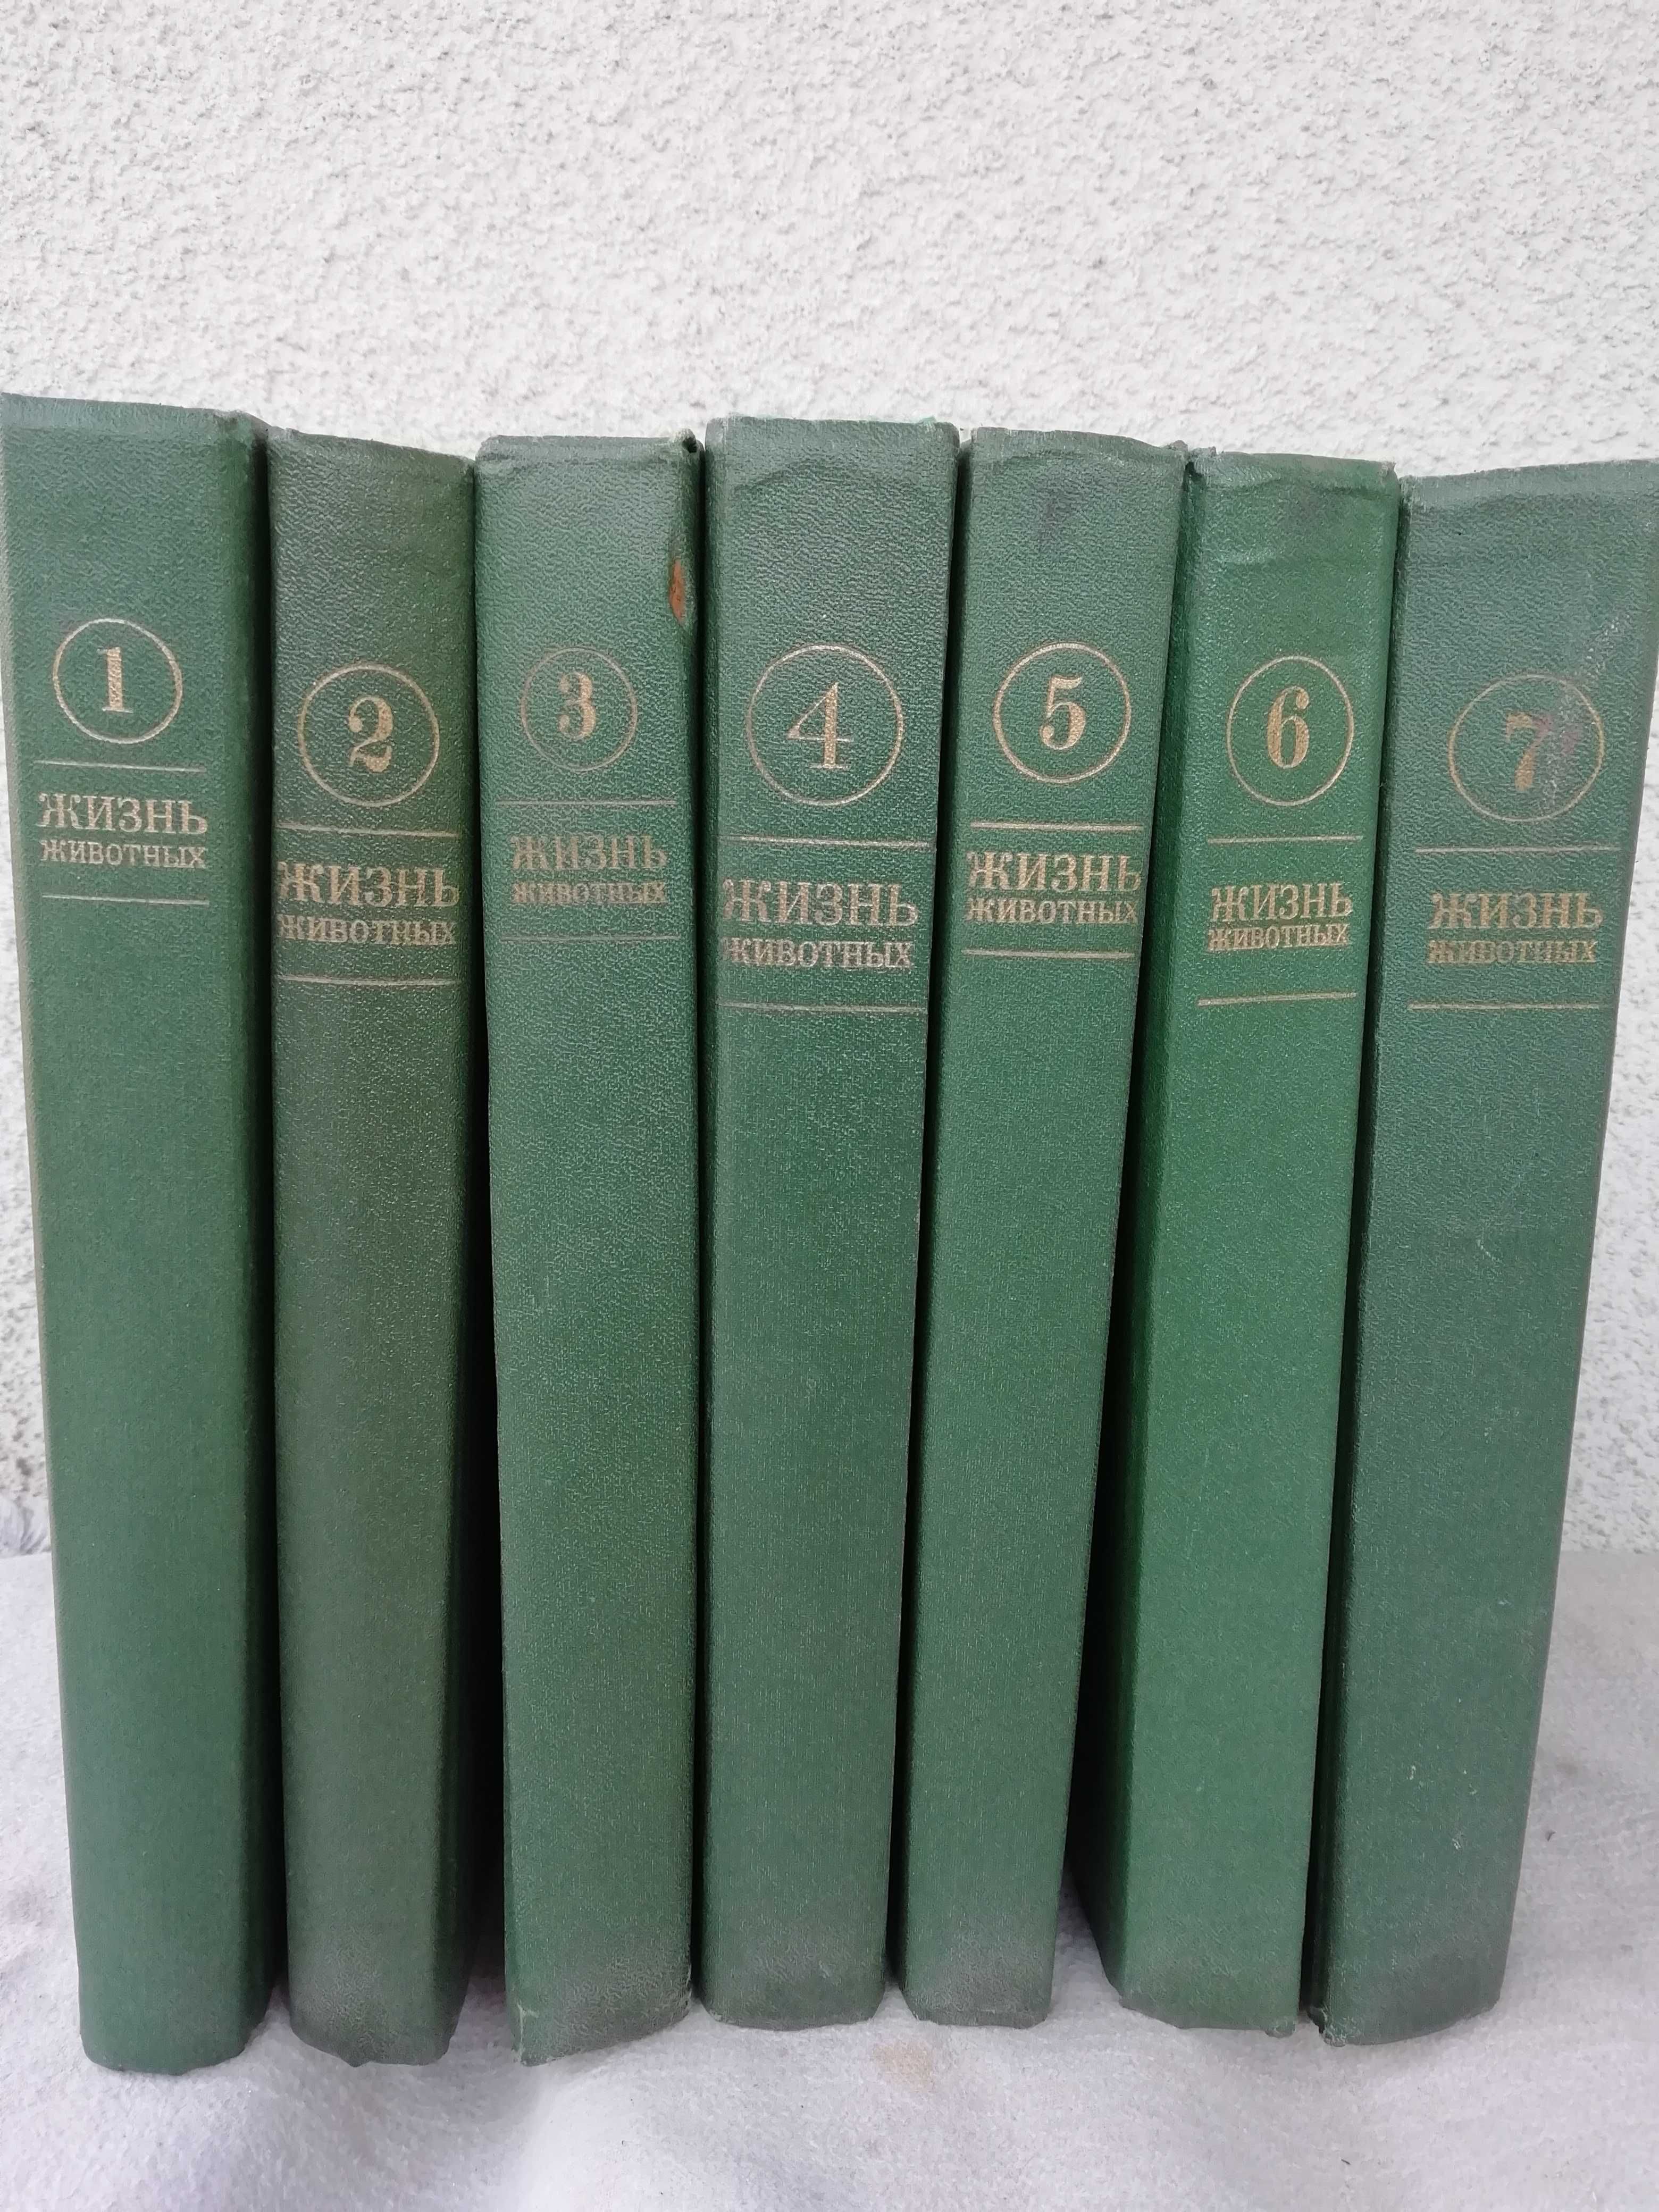 «Жизнь животных» в 7 томах .Енциклопедическое издание